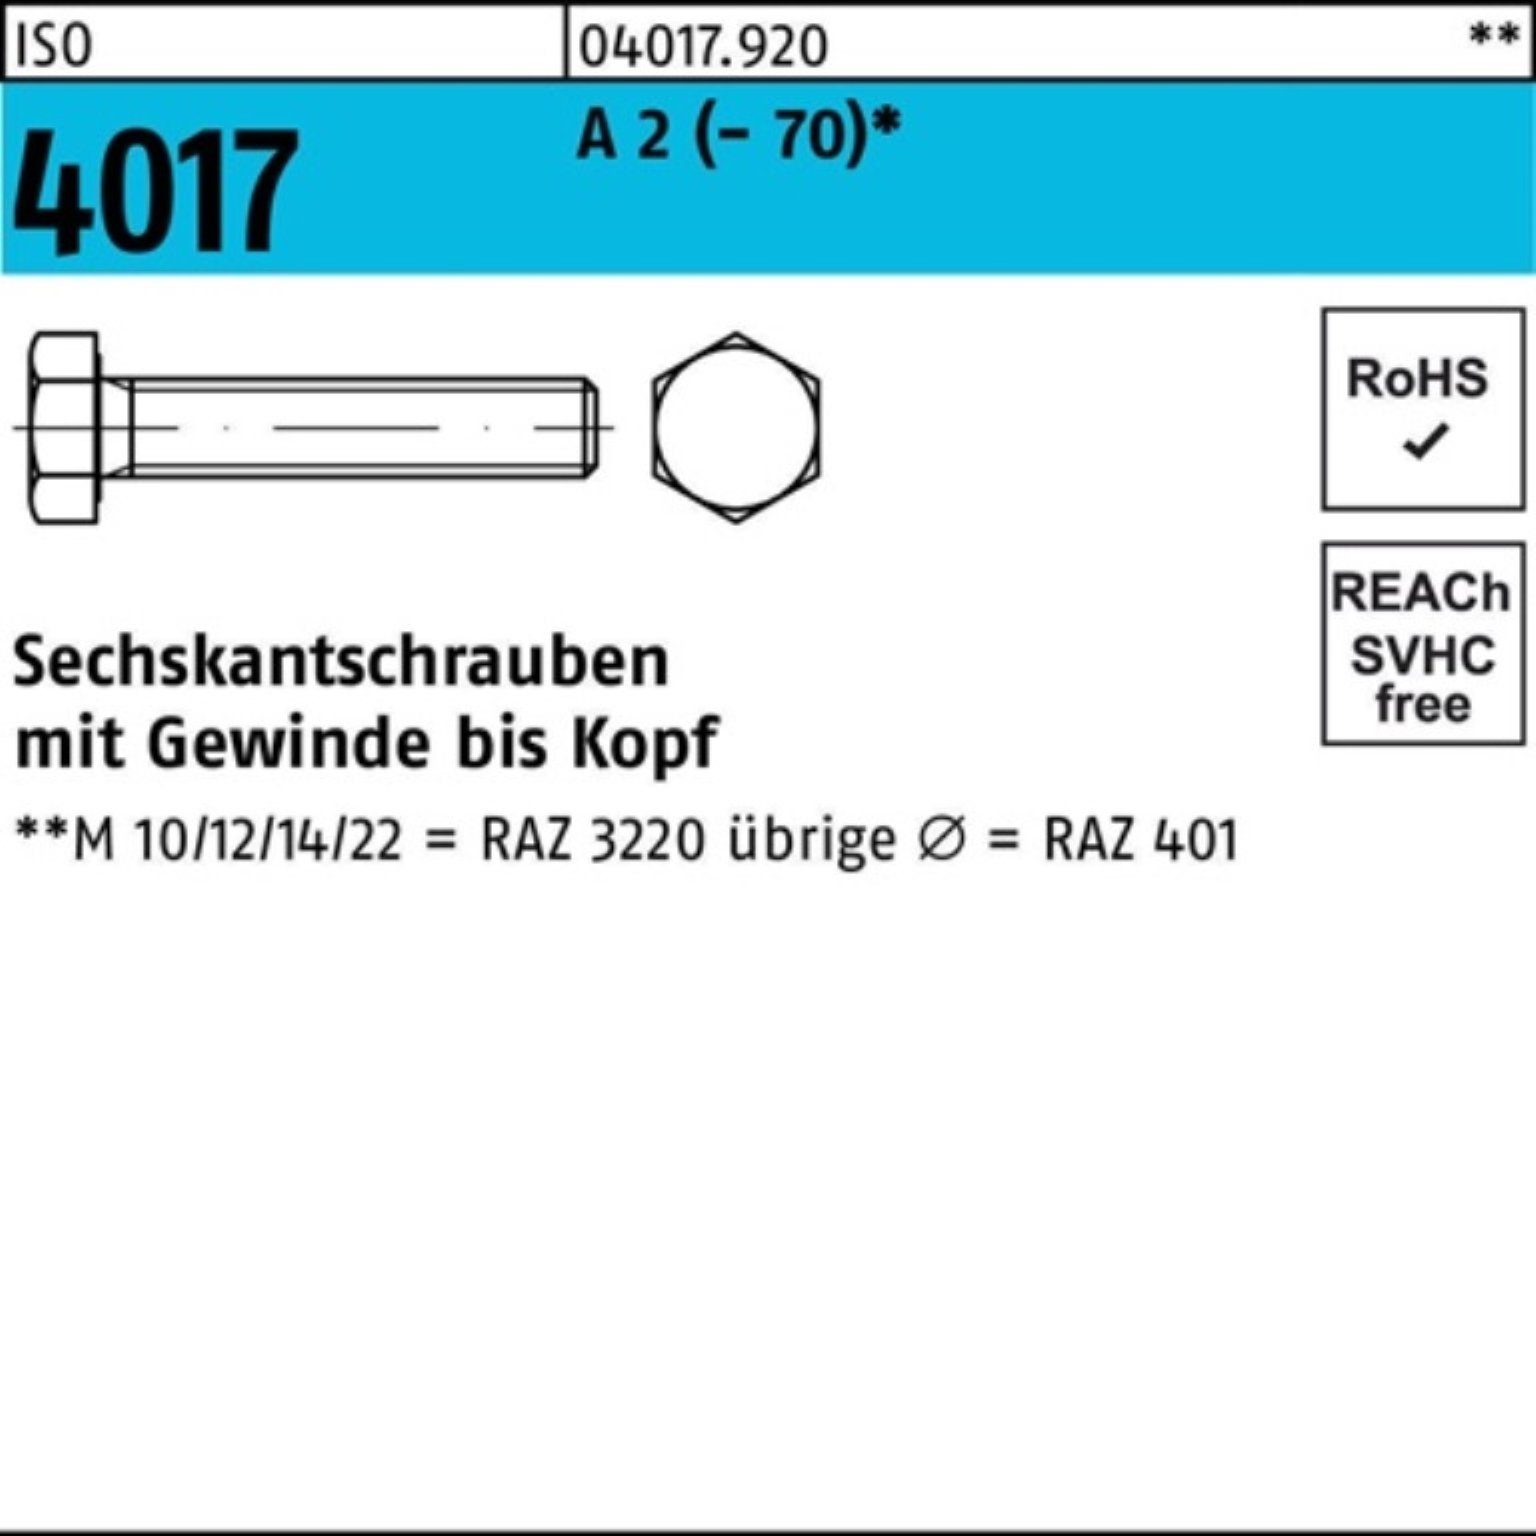 Pack 100er 170 1 VG Stück A 4017 Sechskantschraube Sechskantschraube 2 (70) ISO Bufab M12x